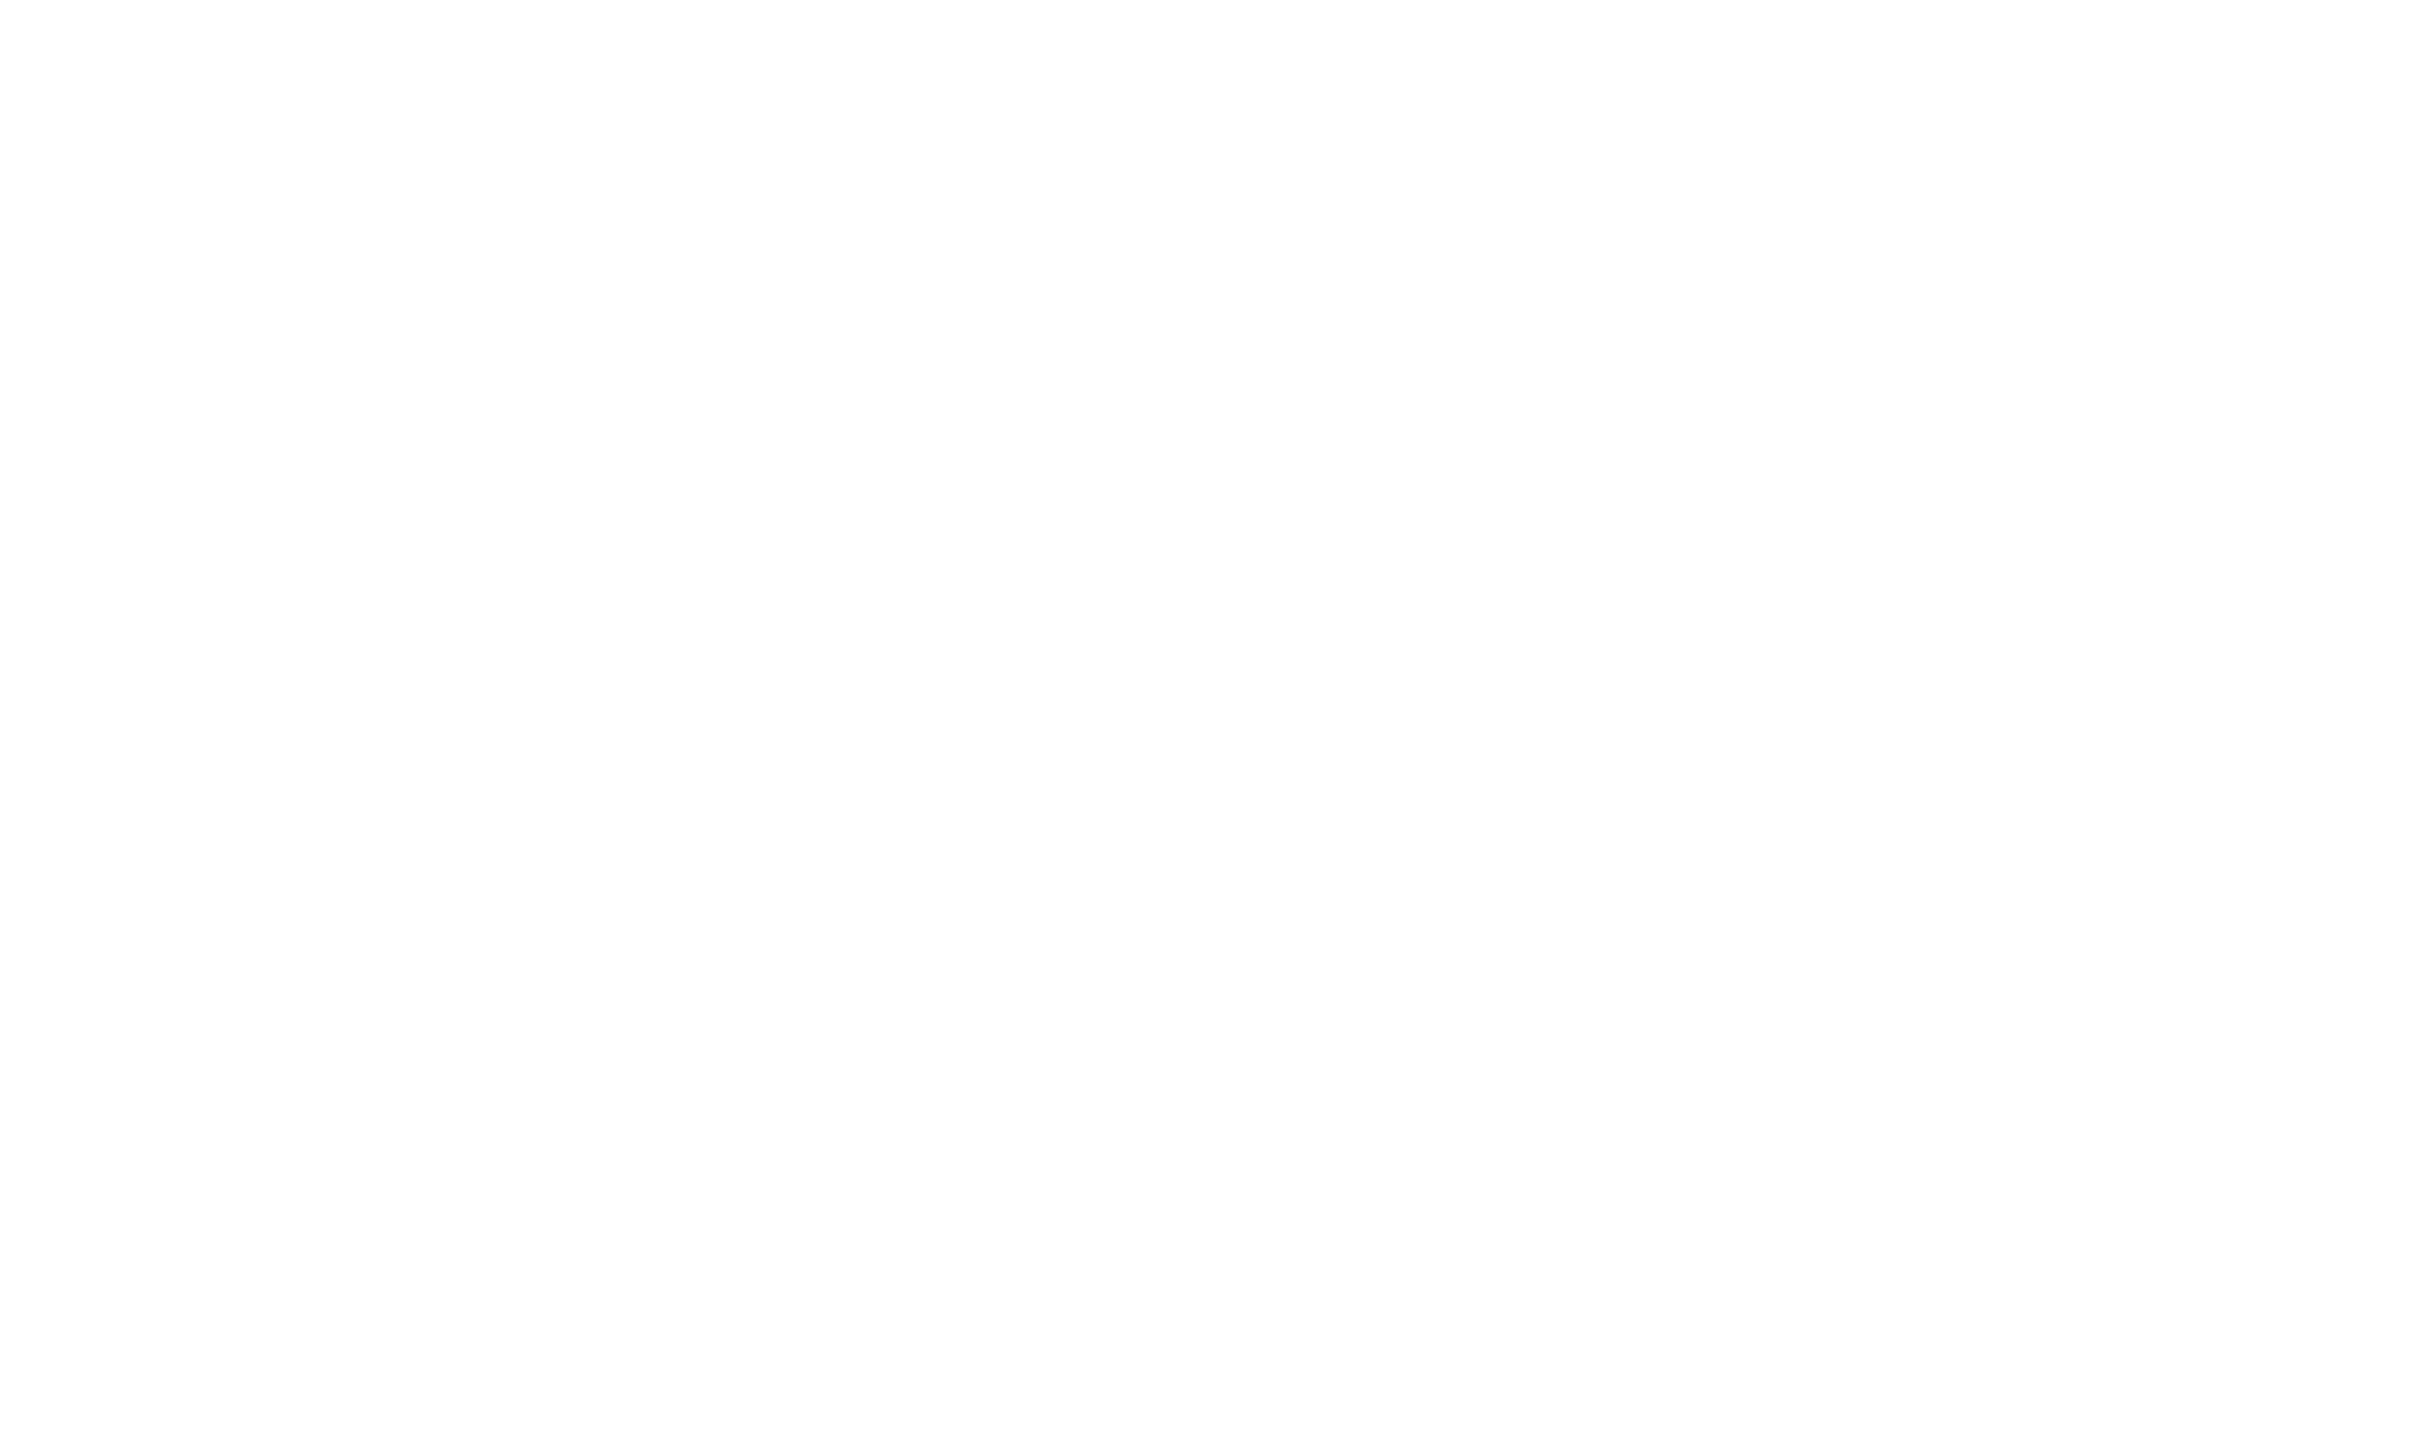 Broadmeadows Special Developmental School